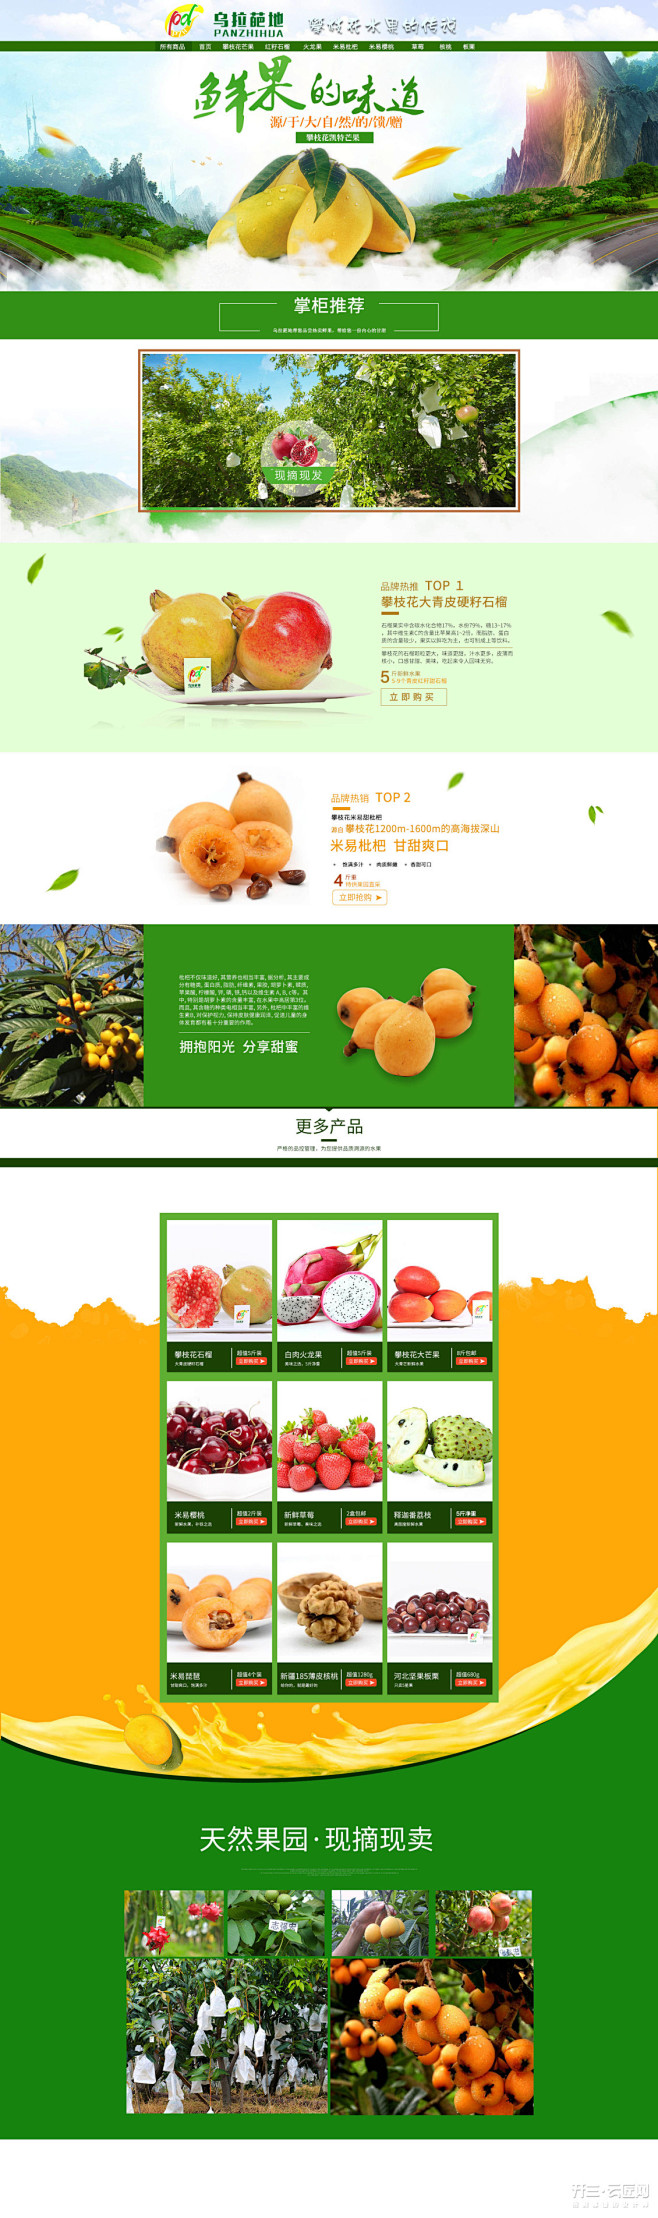 绿色天然水果农产品首页-困困的简历-淘宝...